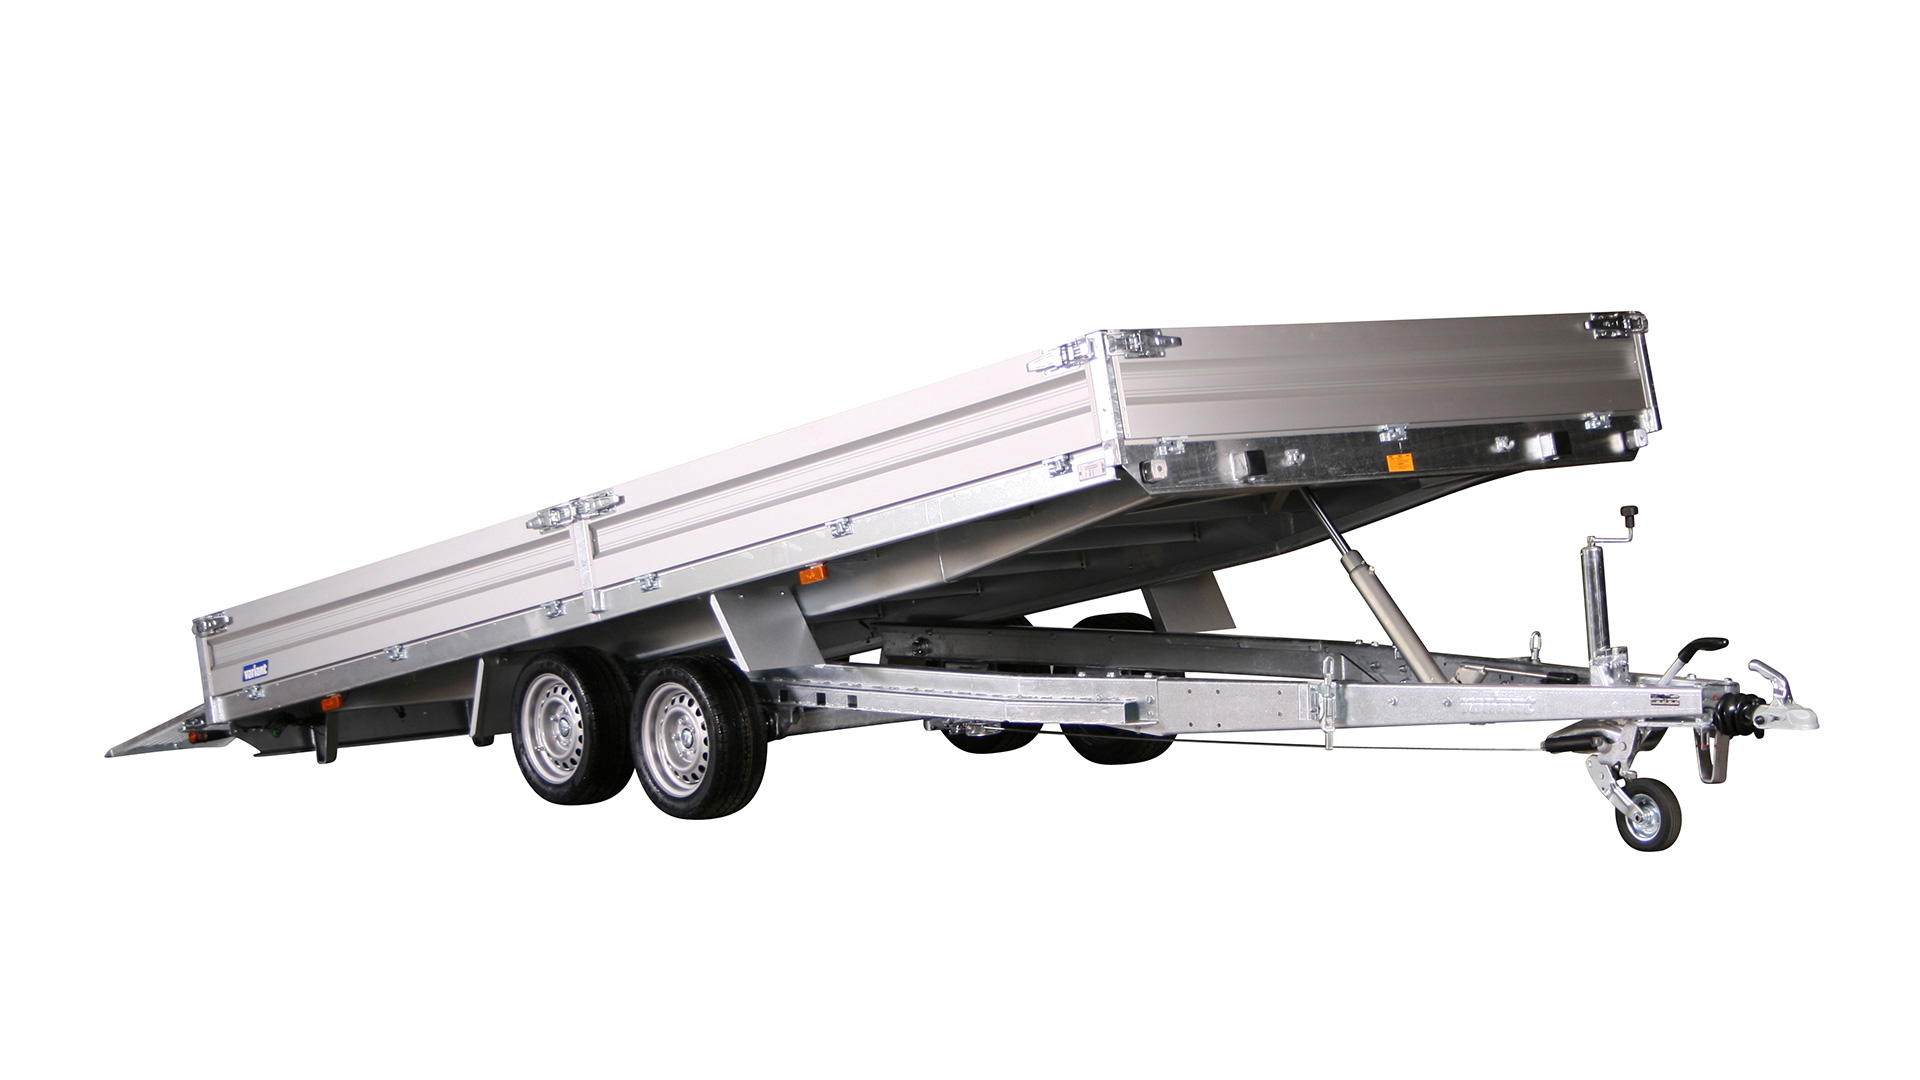 Variant PKW Anhänger Universaltransporter 3521 U5 - kippbar3500 kg, Ladefläche 5,20 x 2,10 m, mit Bordwände